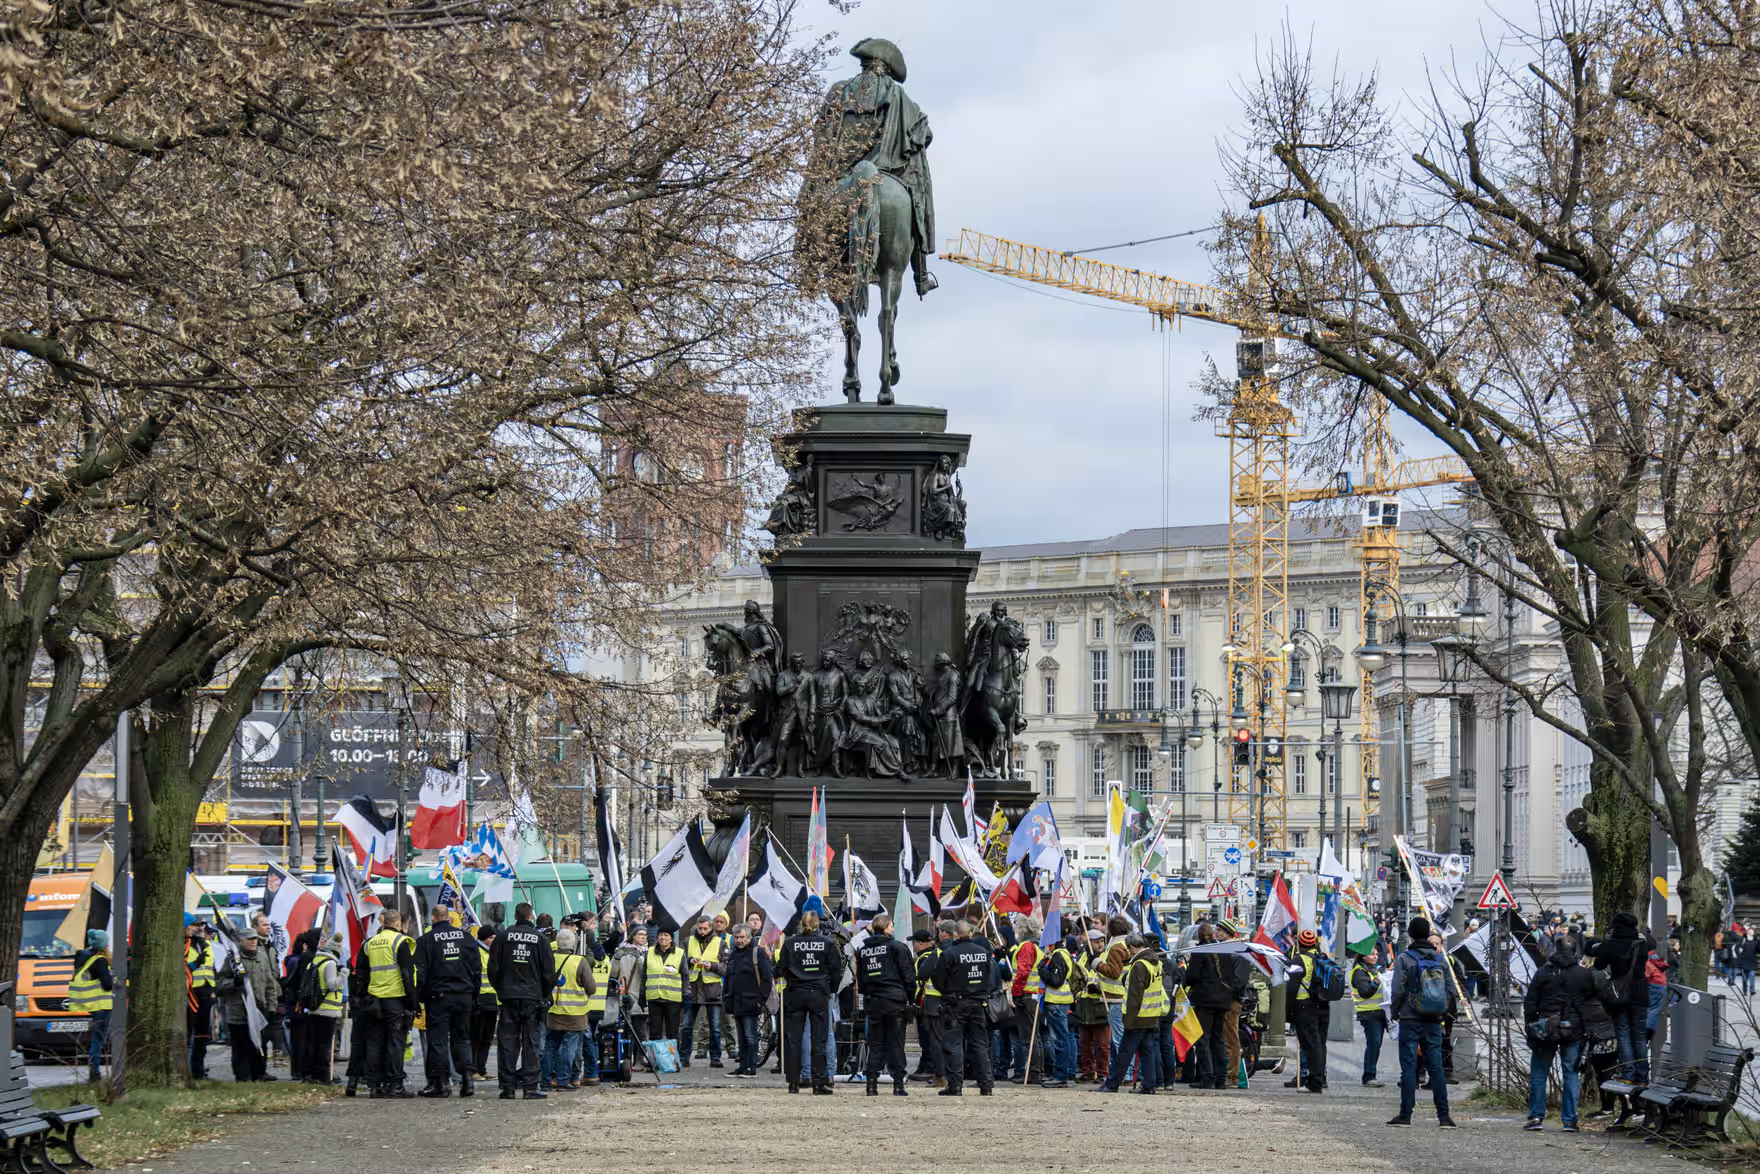 Під гаслом "Марш Великої Пруссії за батьківщину і мир у всьому світі" праві екстремісти зібрали так званих громадян Рейху в Люстгартені в Берлін-Мітте. Фото: M Czapski/Shutterstock